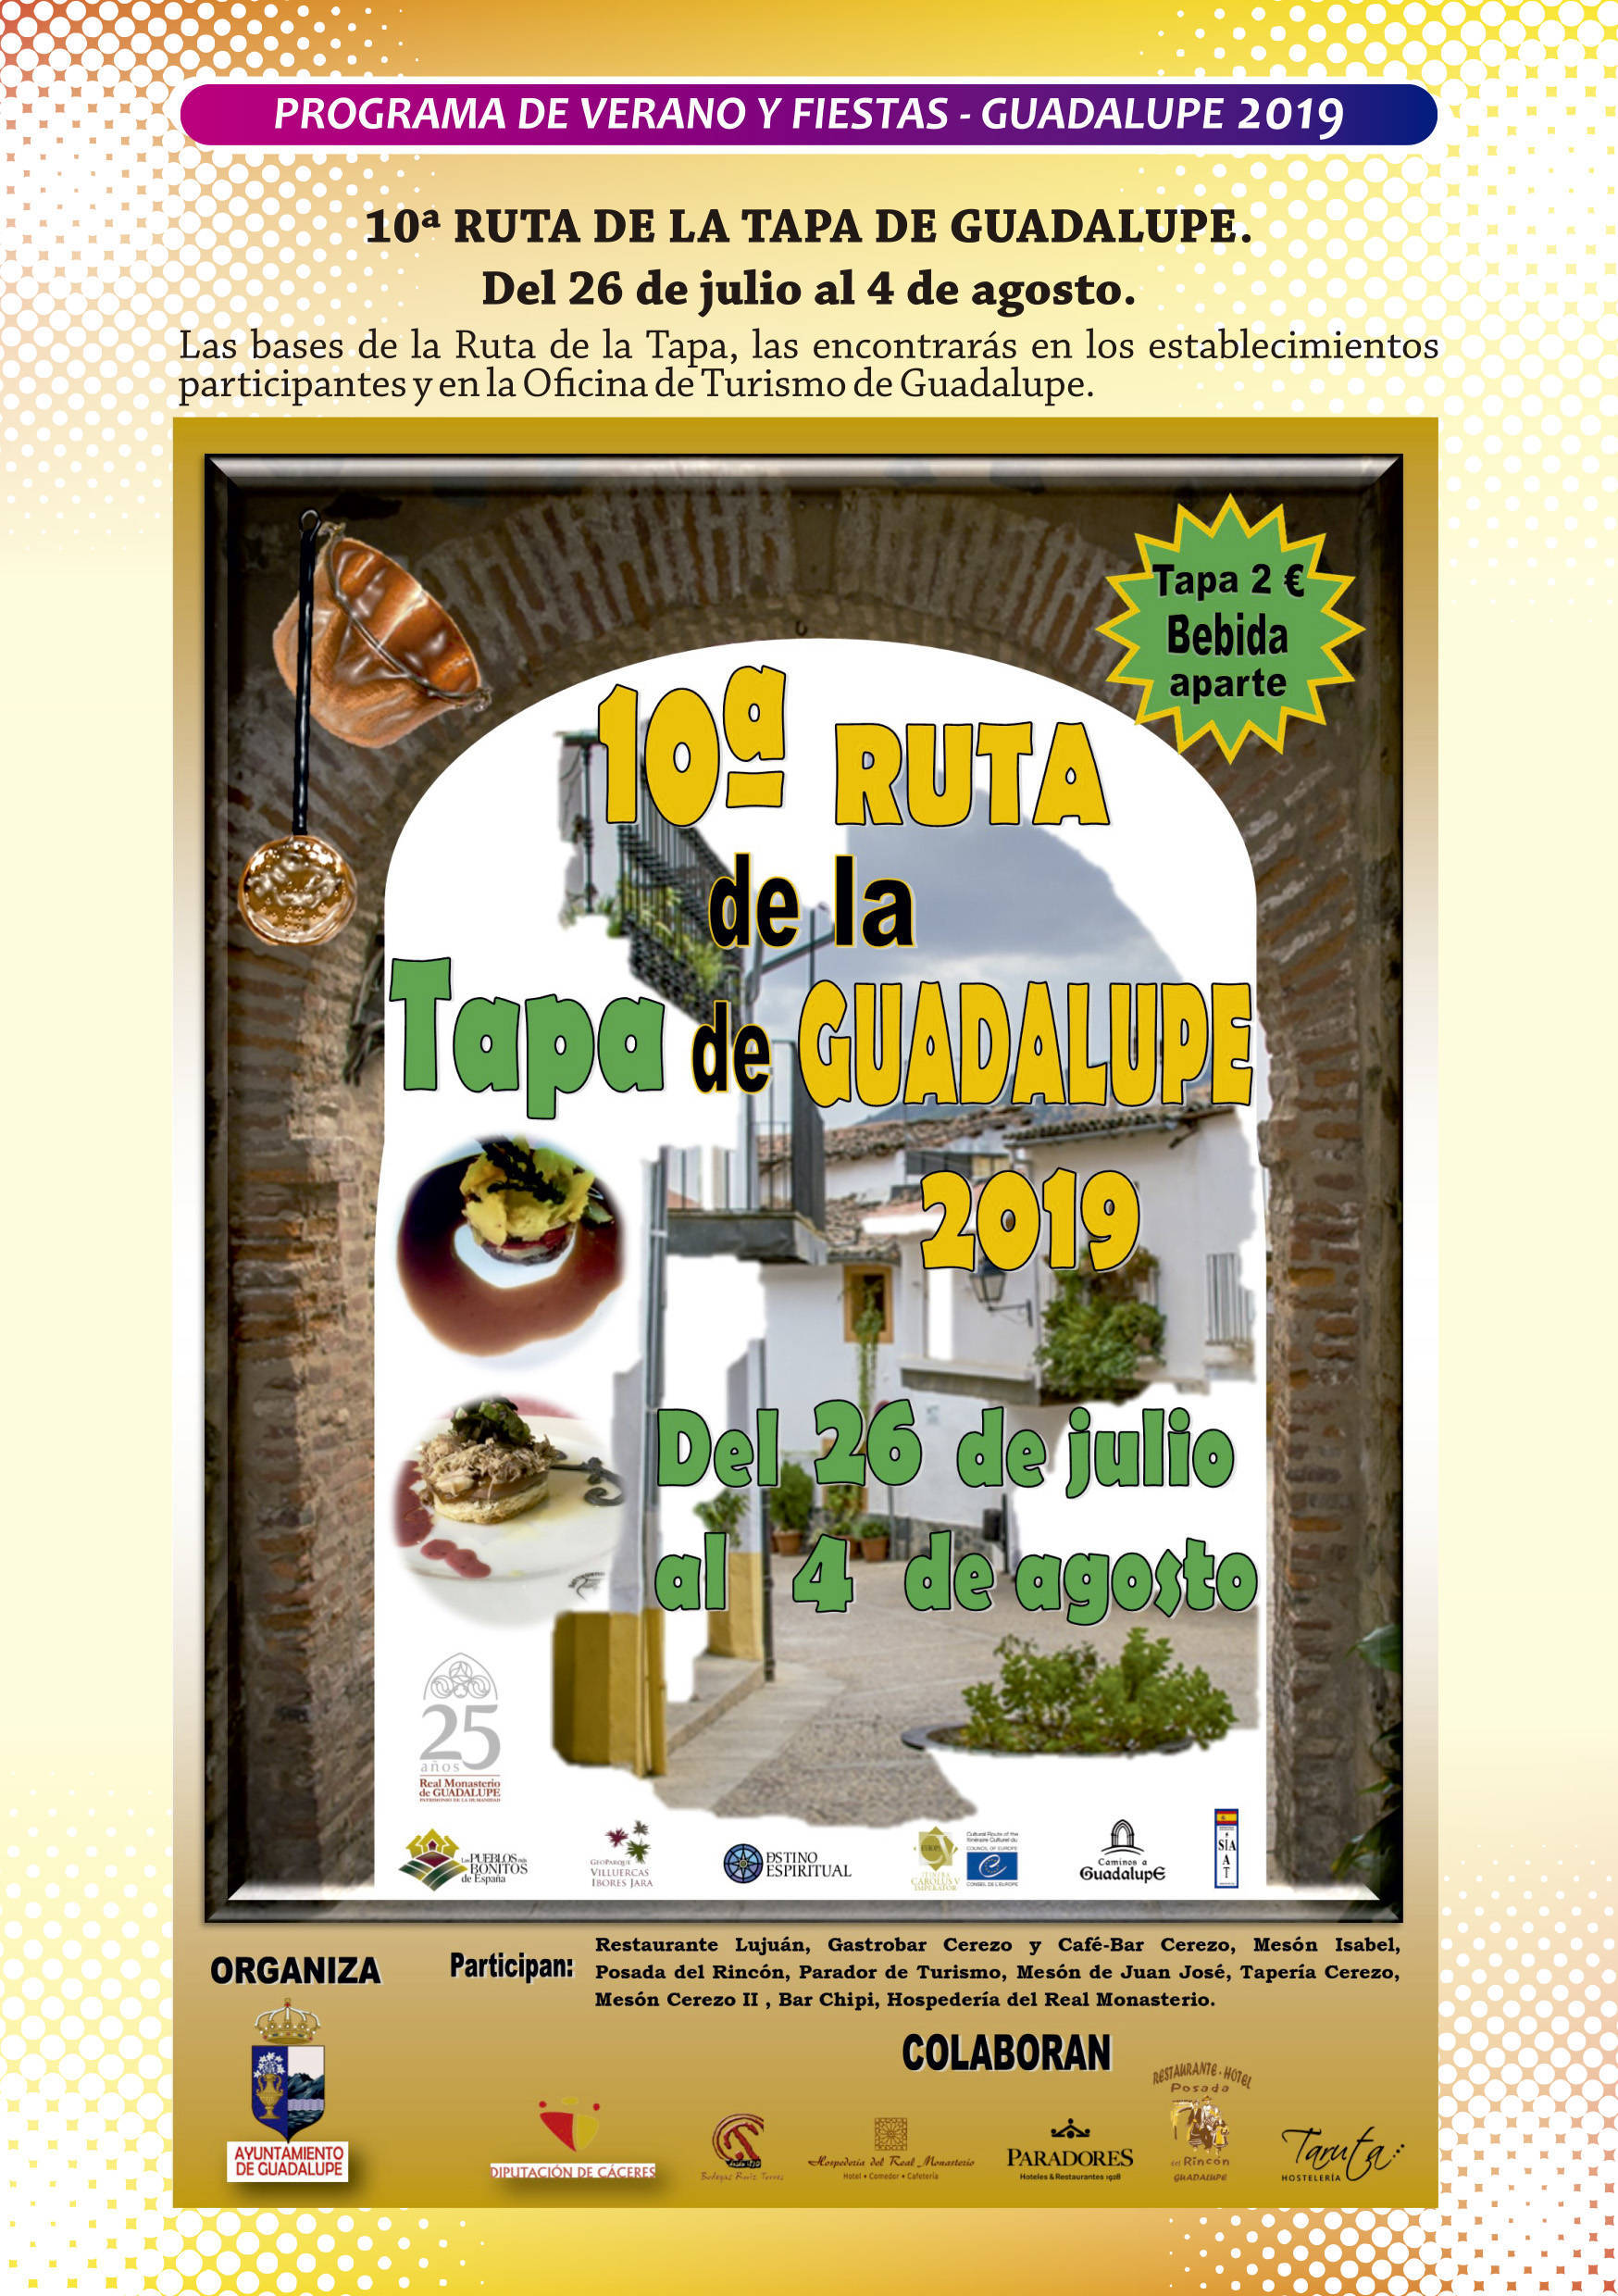 Programa de verano y fiestas 2019 - Guadalupe (Cáceres) 4